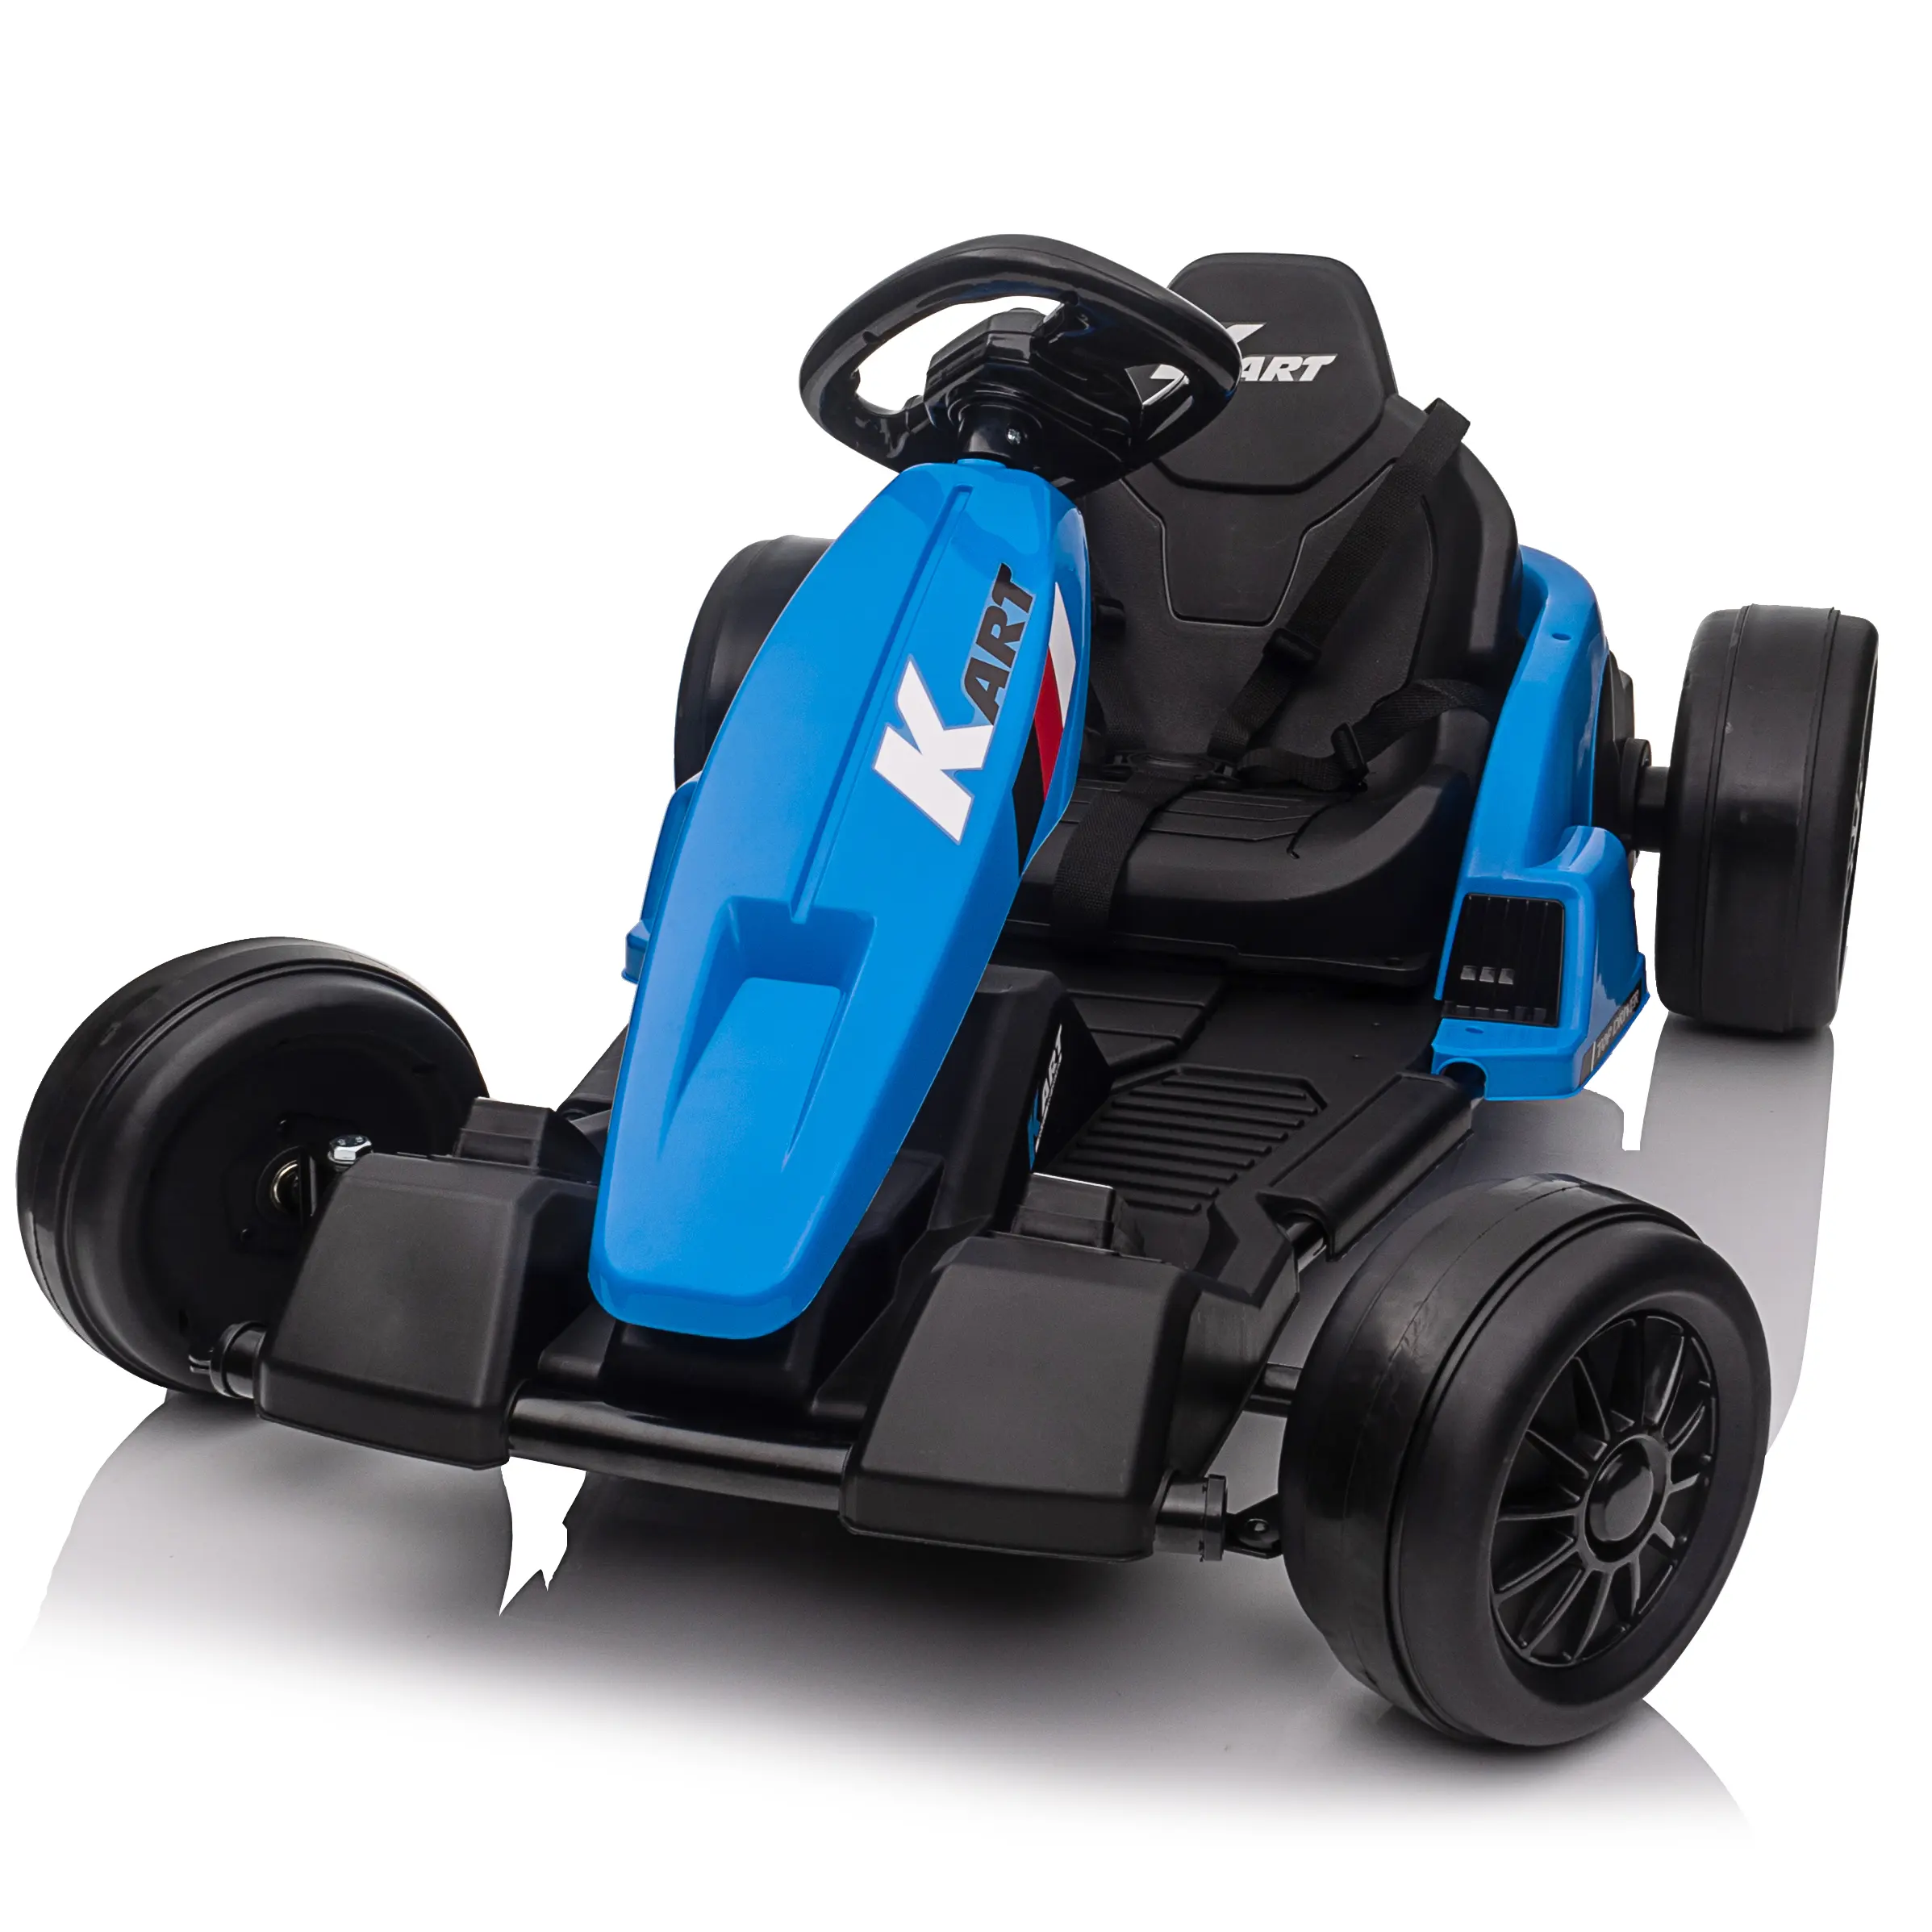 نوعية جيدة الكهربائية الذهاب عربات حديثا تصميم كارت دواسة سيارات رخيصة سيارة كهربائية للأطفال سباق الذهاب العربة للأطفال